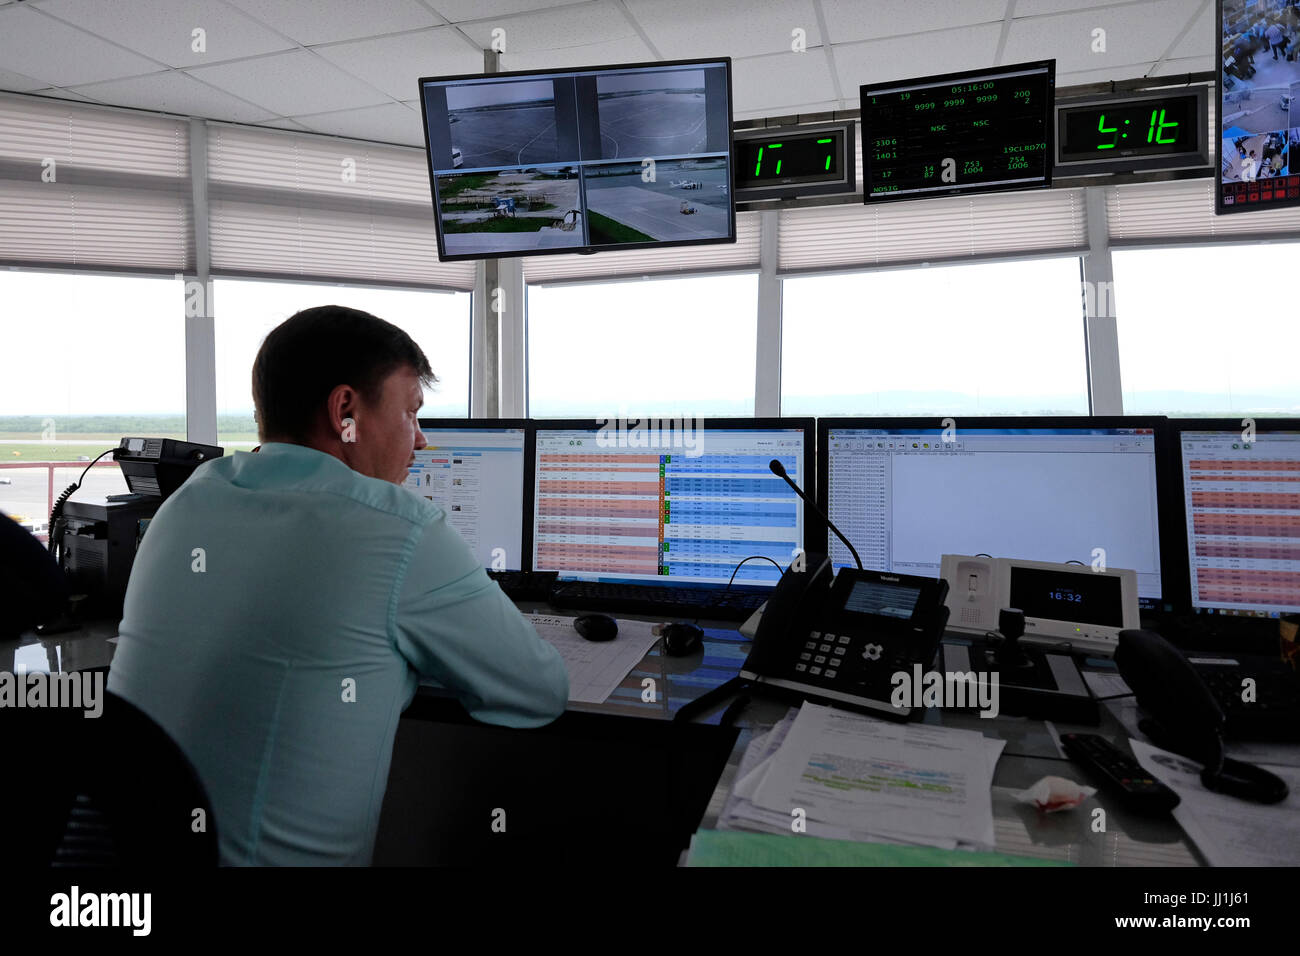 Le contrôleur de la circulation aérienne surveille les vols à la tour de contrôle de l'aéroport Yuzhno-Sakhalinsk, également appelé Khomutovo dans la ville de Yuzhno-Sakhalinsk, dans l'île de Sakhaline, dans l'océan Pacifique. Russie Banque D'Images